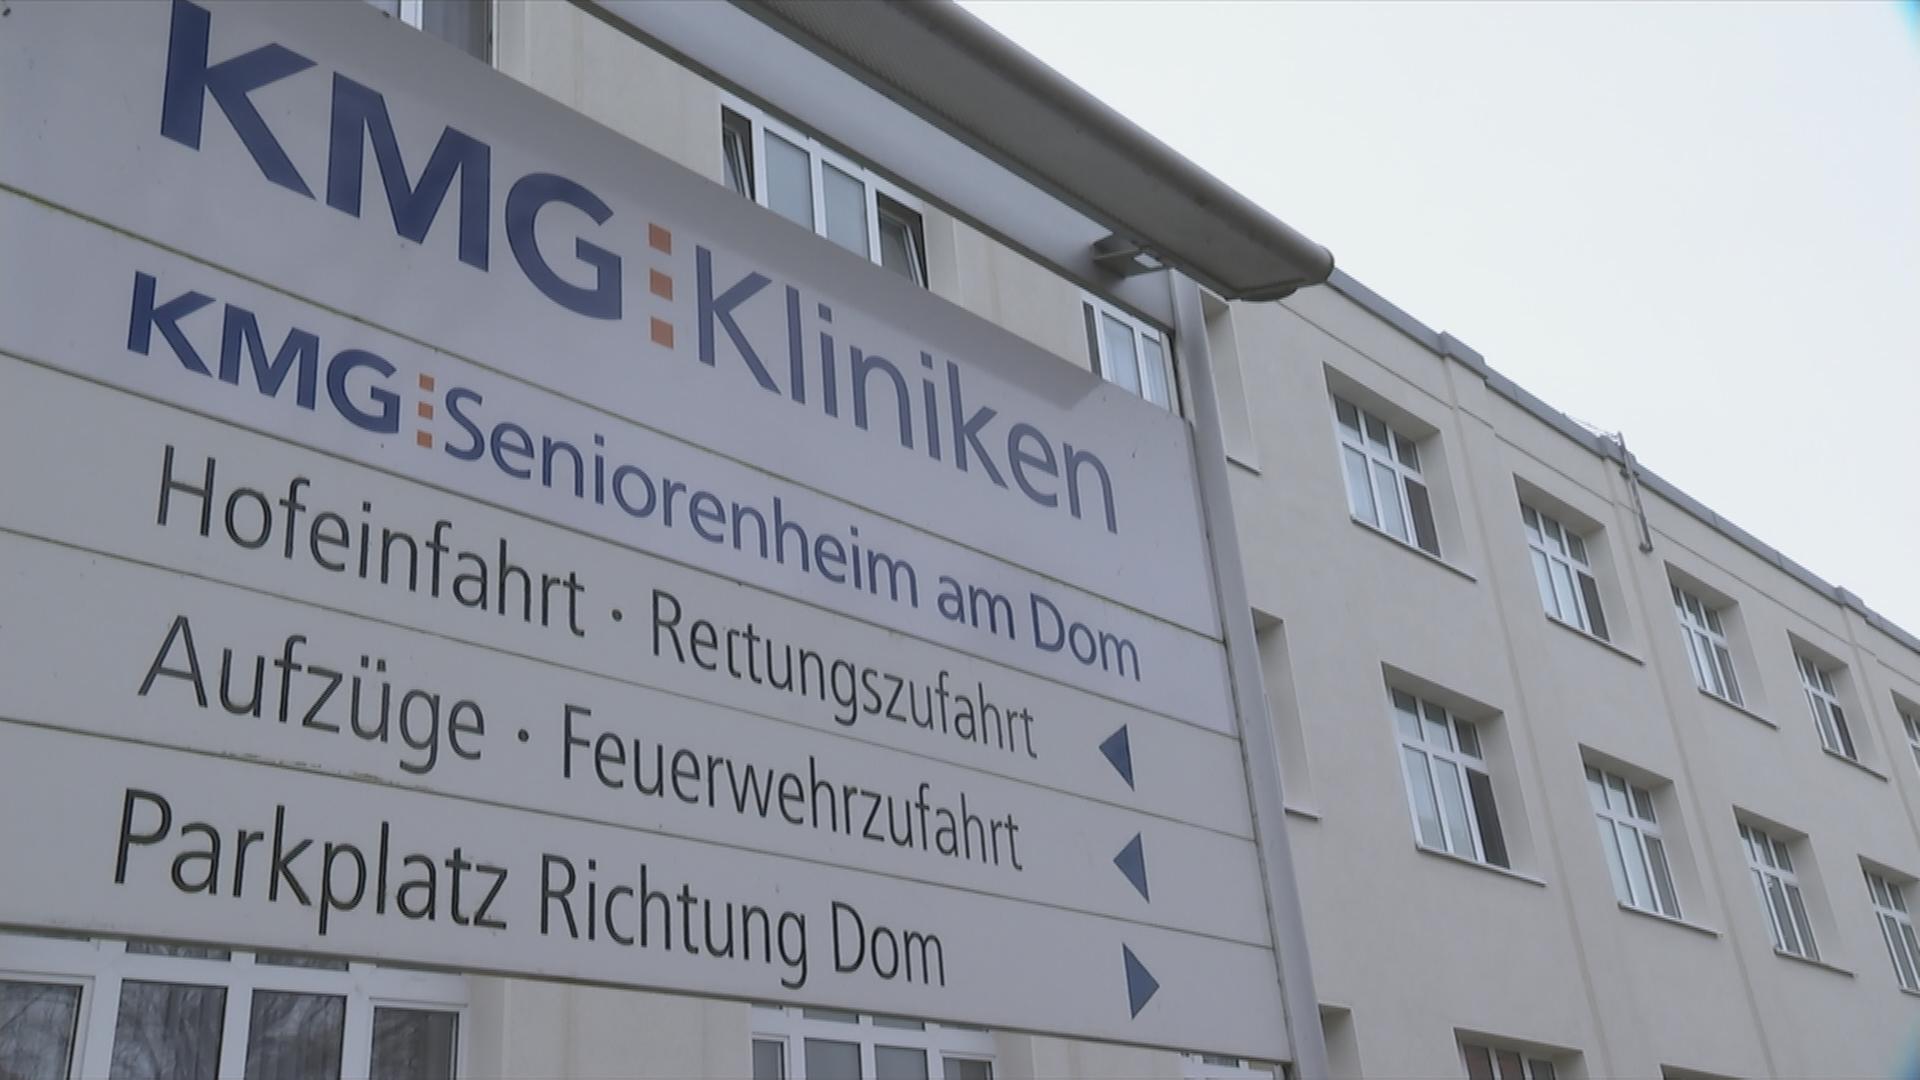 KMG Kliniken in Sachsen-Anhalt.